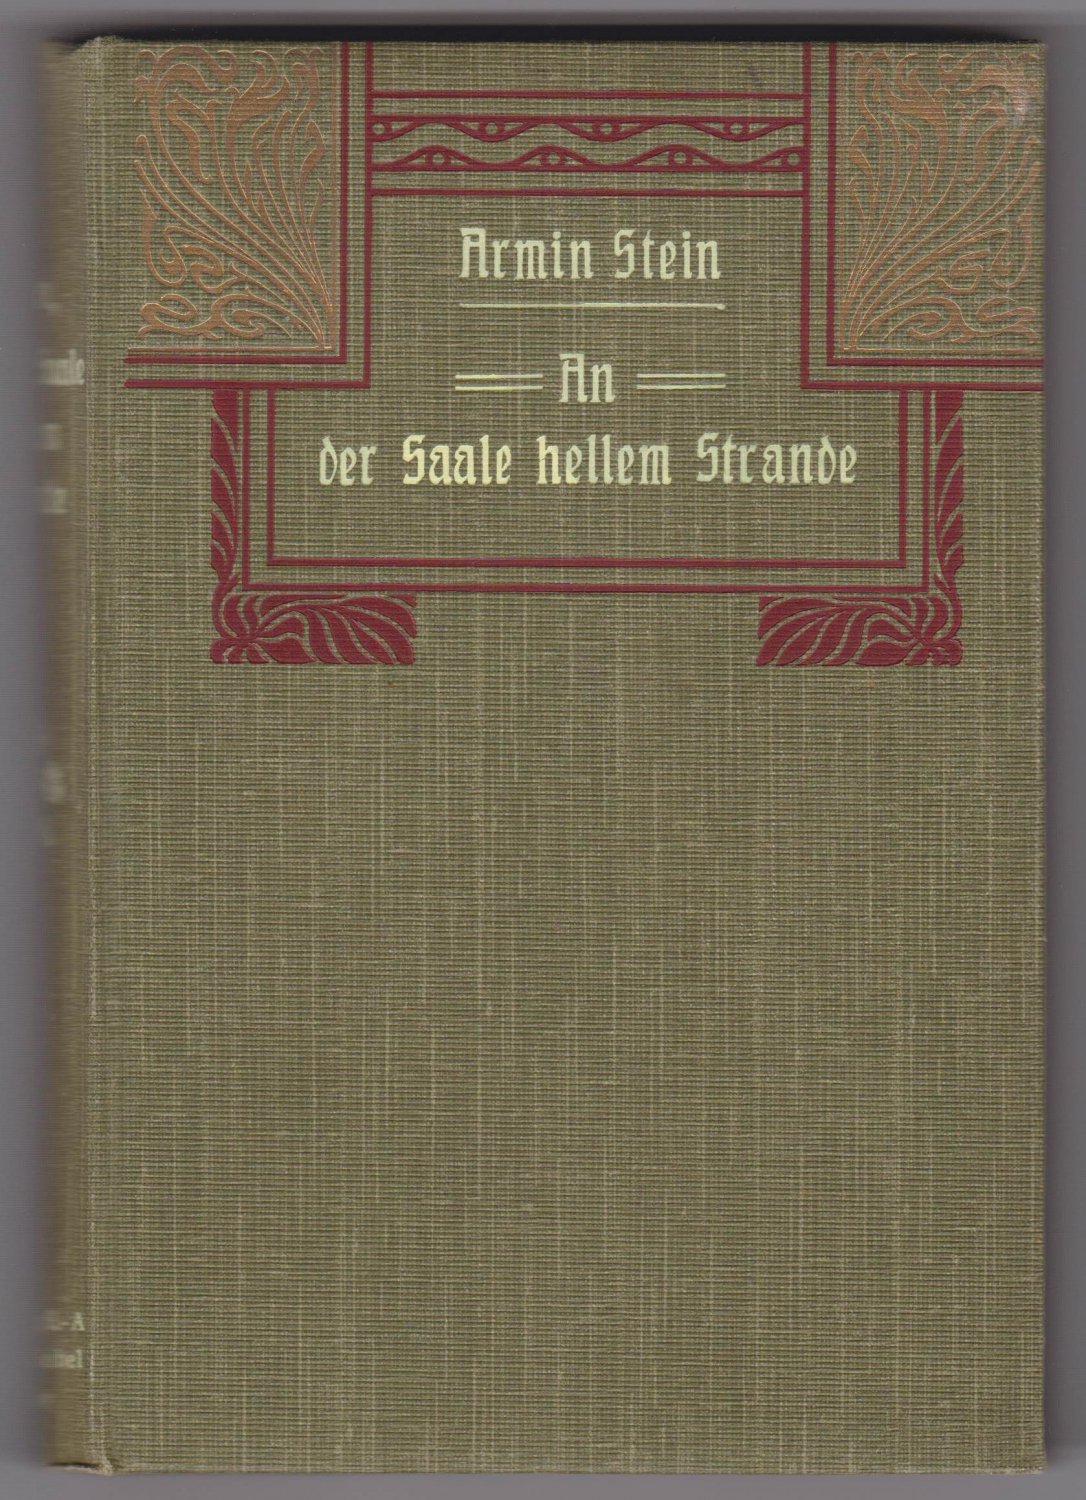 STEIN, Armin:  An der Saale hellem Strande. Fünf Blätter aus der Geschichte von Alt-Halle. 